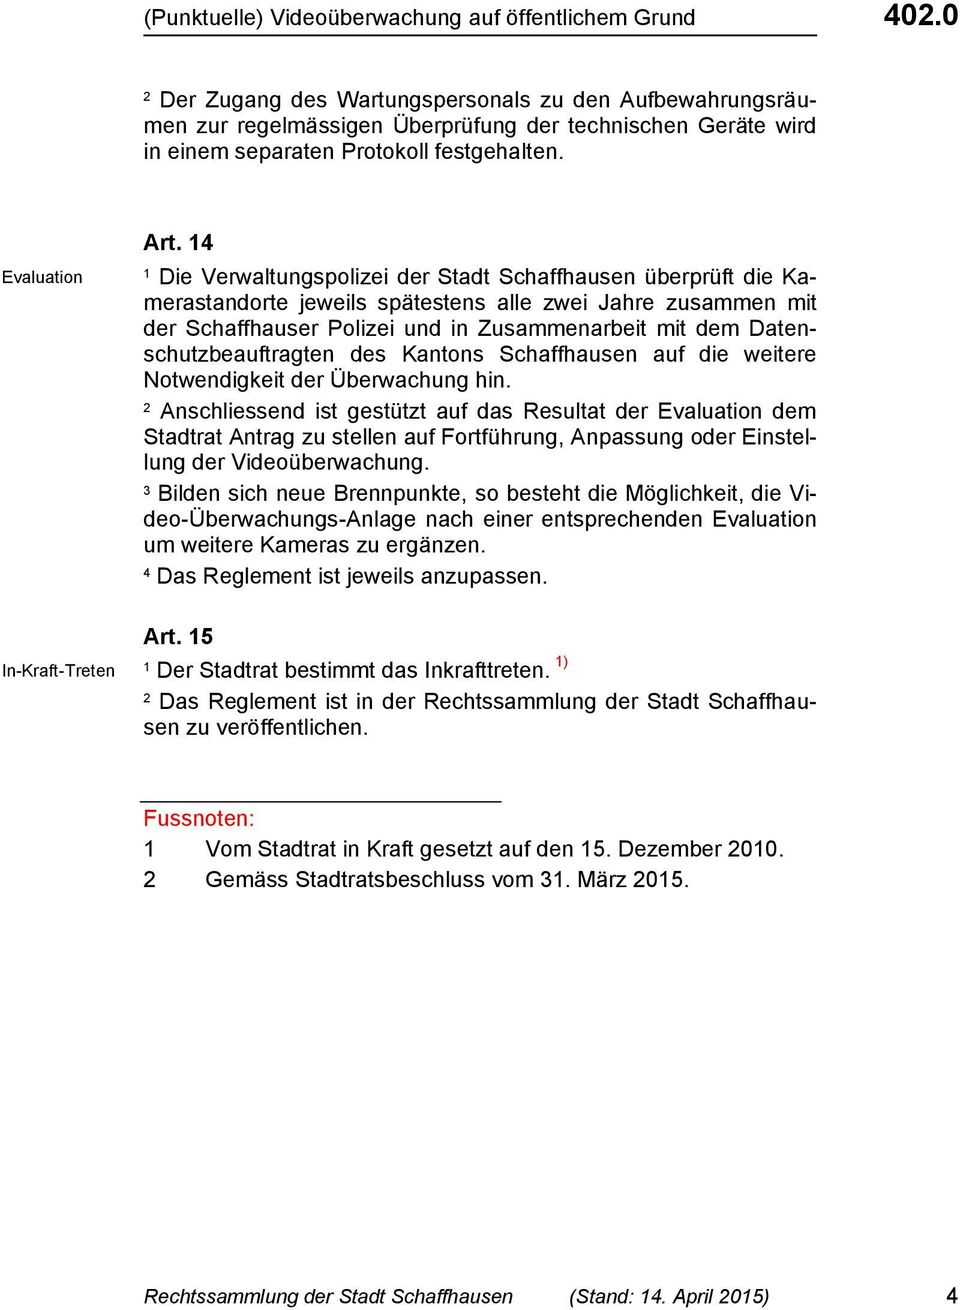 4 Die Verwaltungspolizei der Stadt Schaffhausen überprüft die Kamerastandorte jeweils spätestens alle zwei Jahre zusammen mit der Schaffhauser Polizei und in Zusammenarbeit mit dem